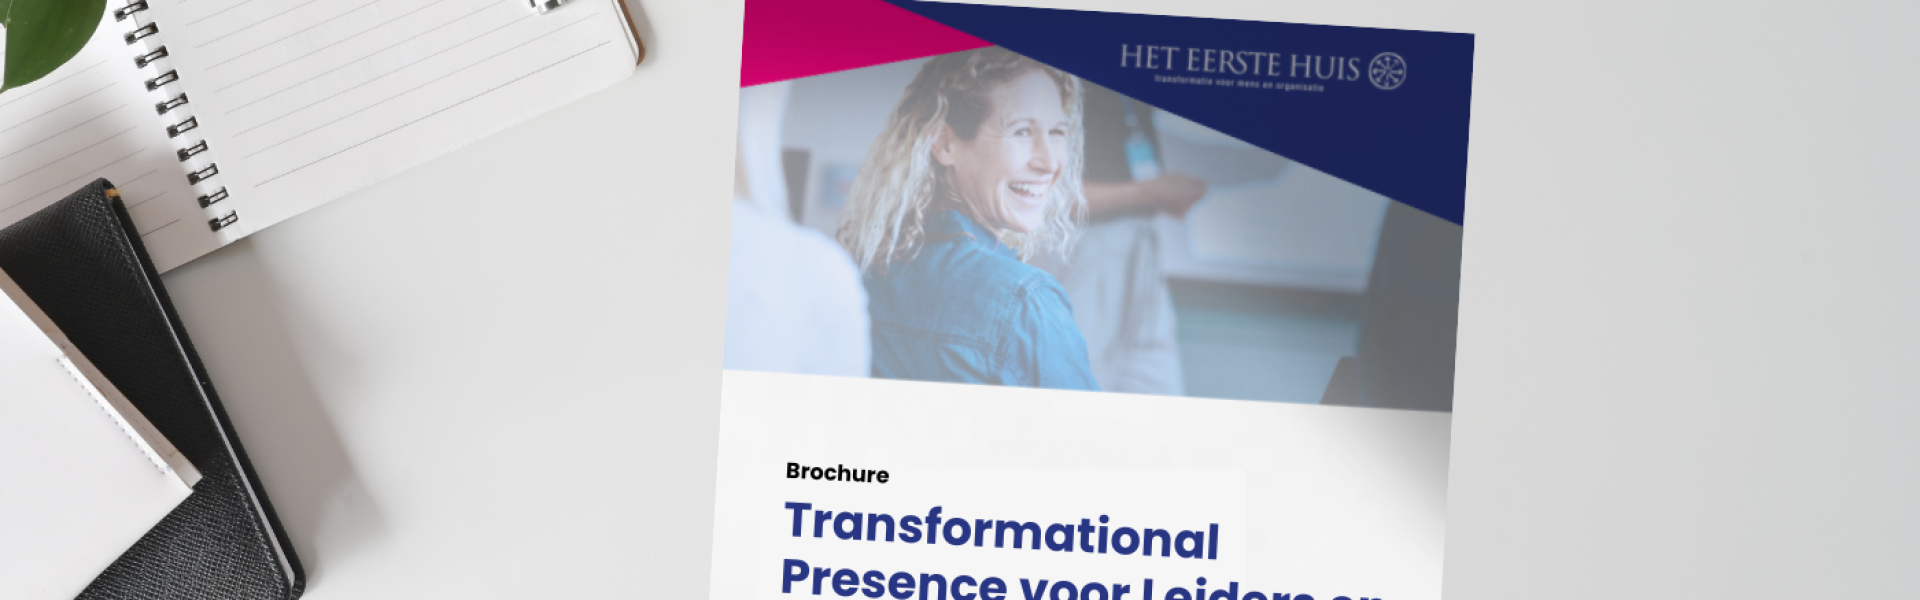 brochure transformational presence voor leiders en coaches